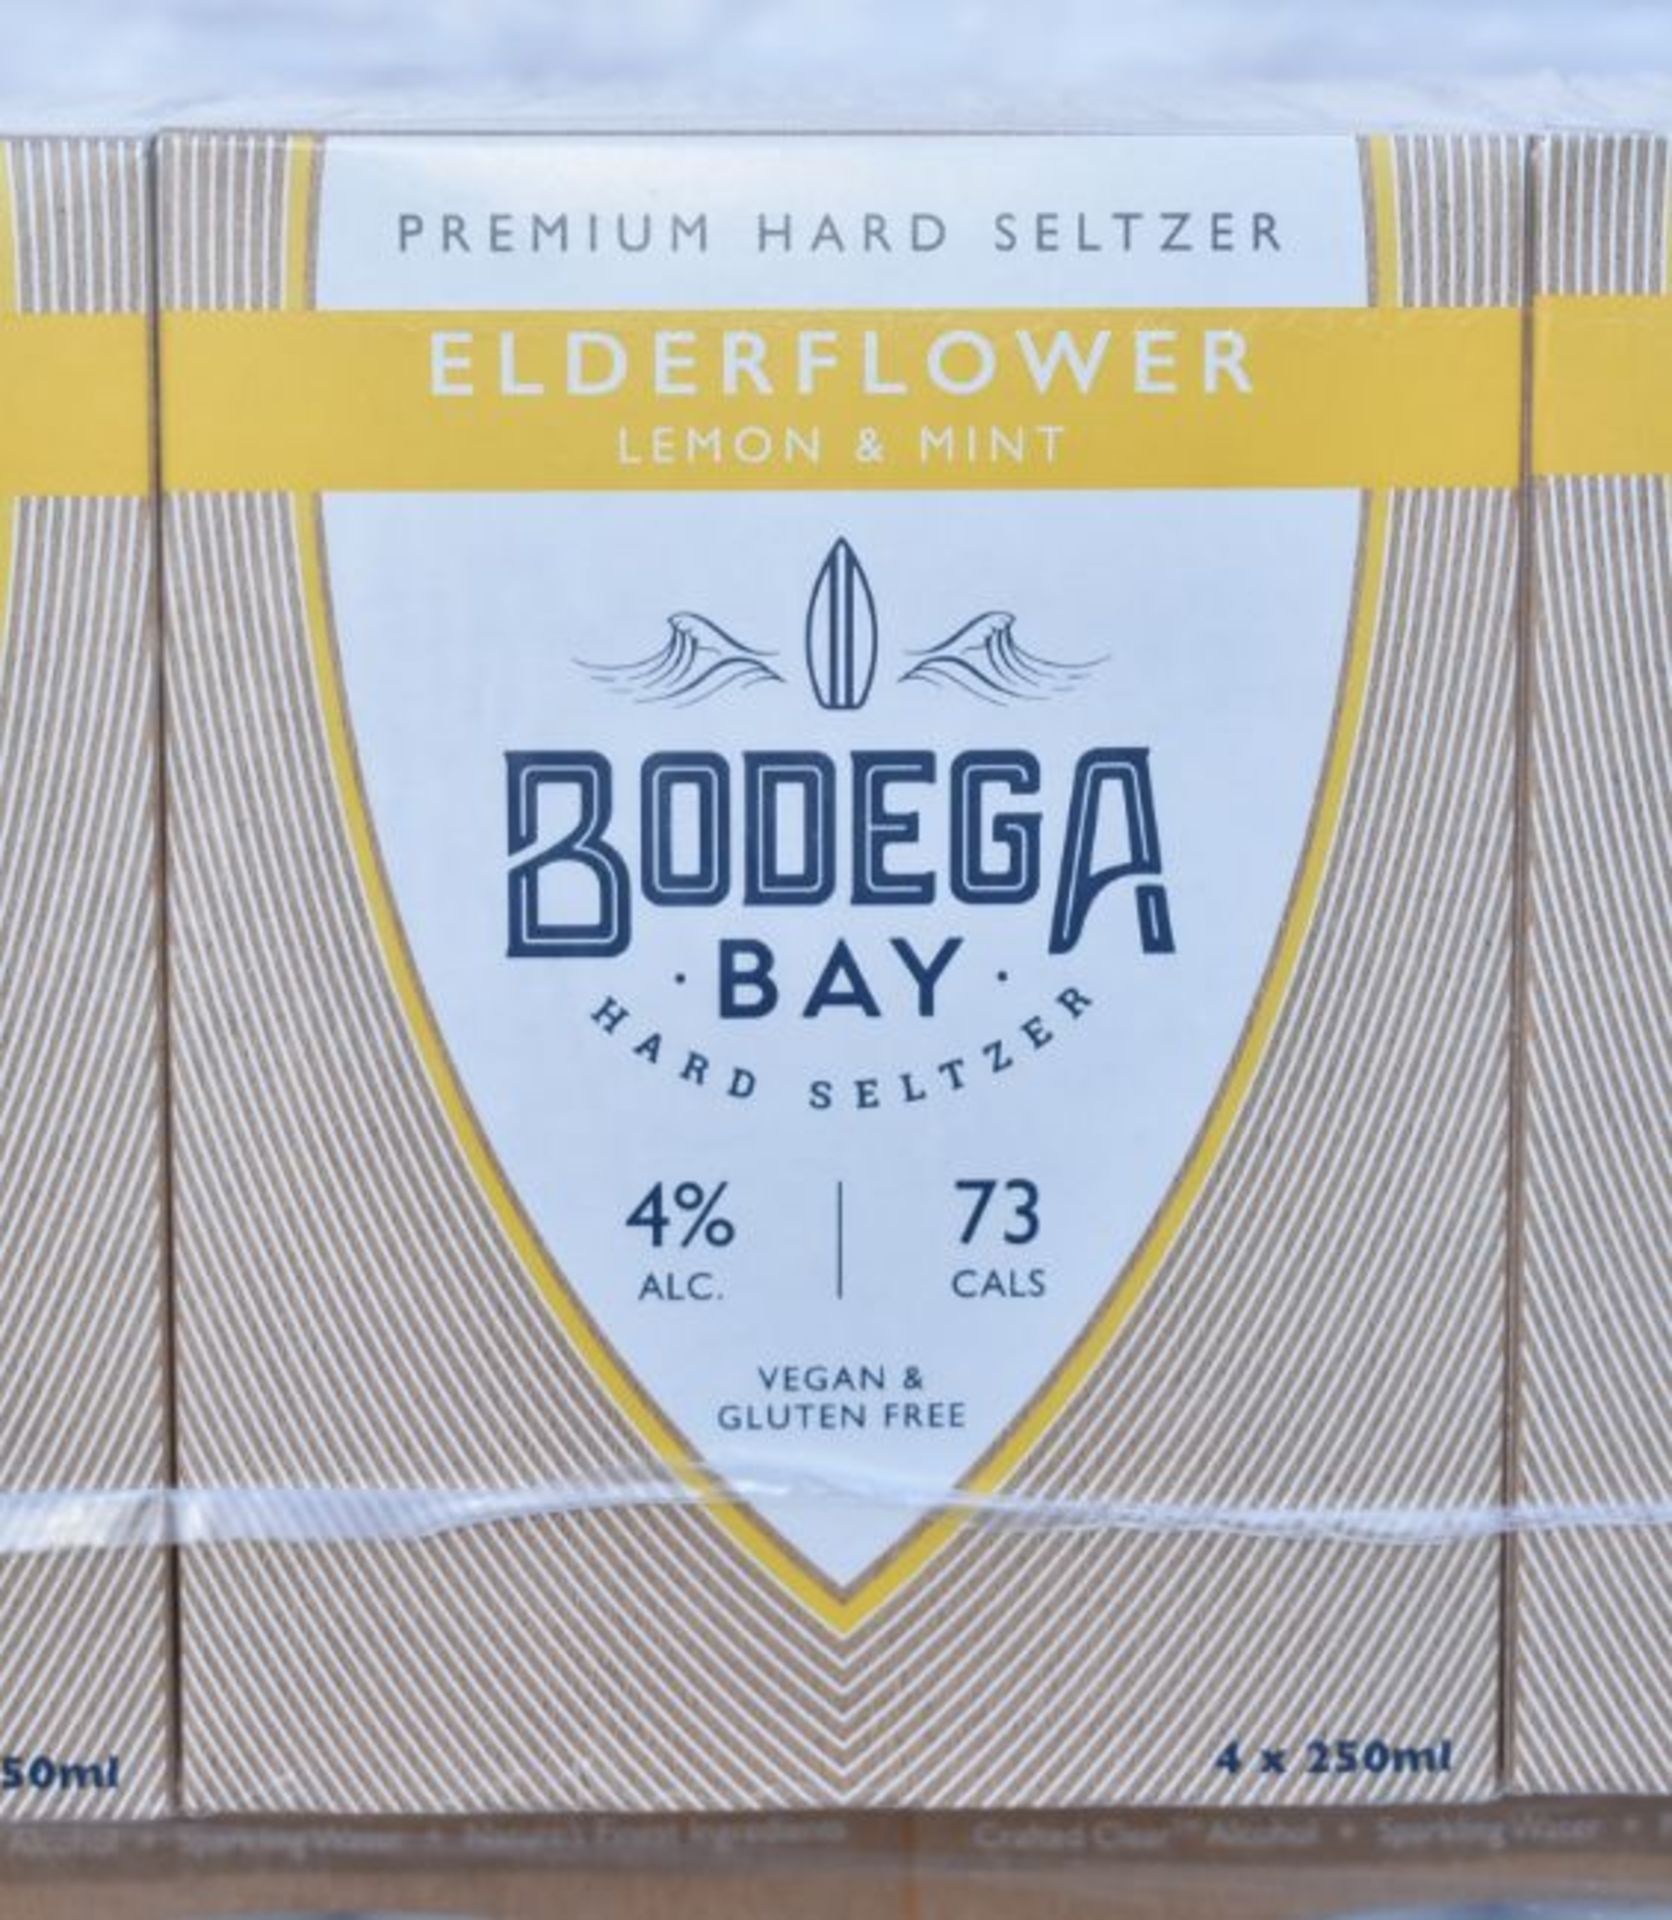 24 x Bodega Bay Hard Seltzer 250ml Alcoholic Sparkling Water Drinks - Elderflower Lemon & Mint - Image 6 of 9